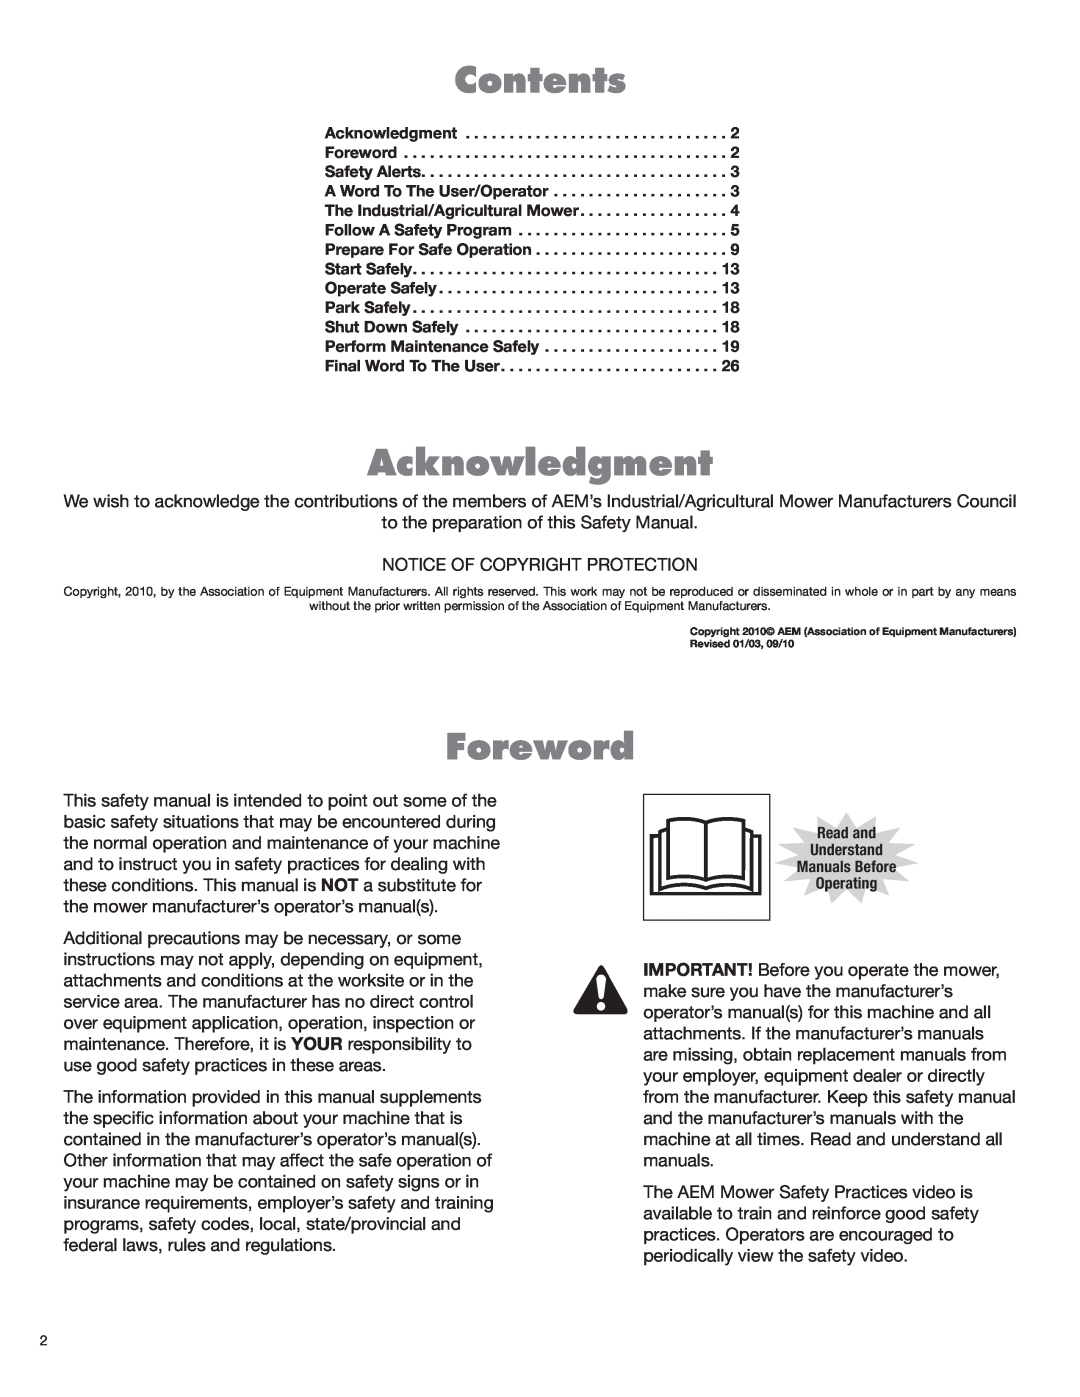 Rhino Mounts RHD62, RHD88, RHD74, RHD96 manual Contents, Acknowledgment, Foreword 